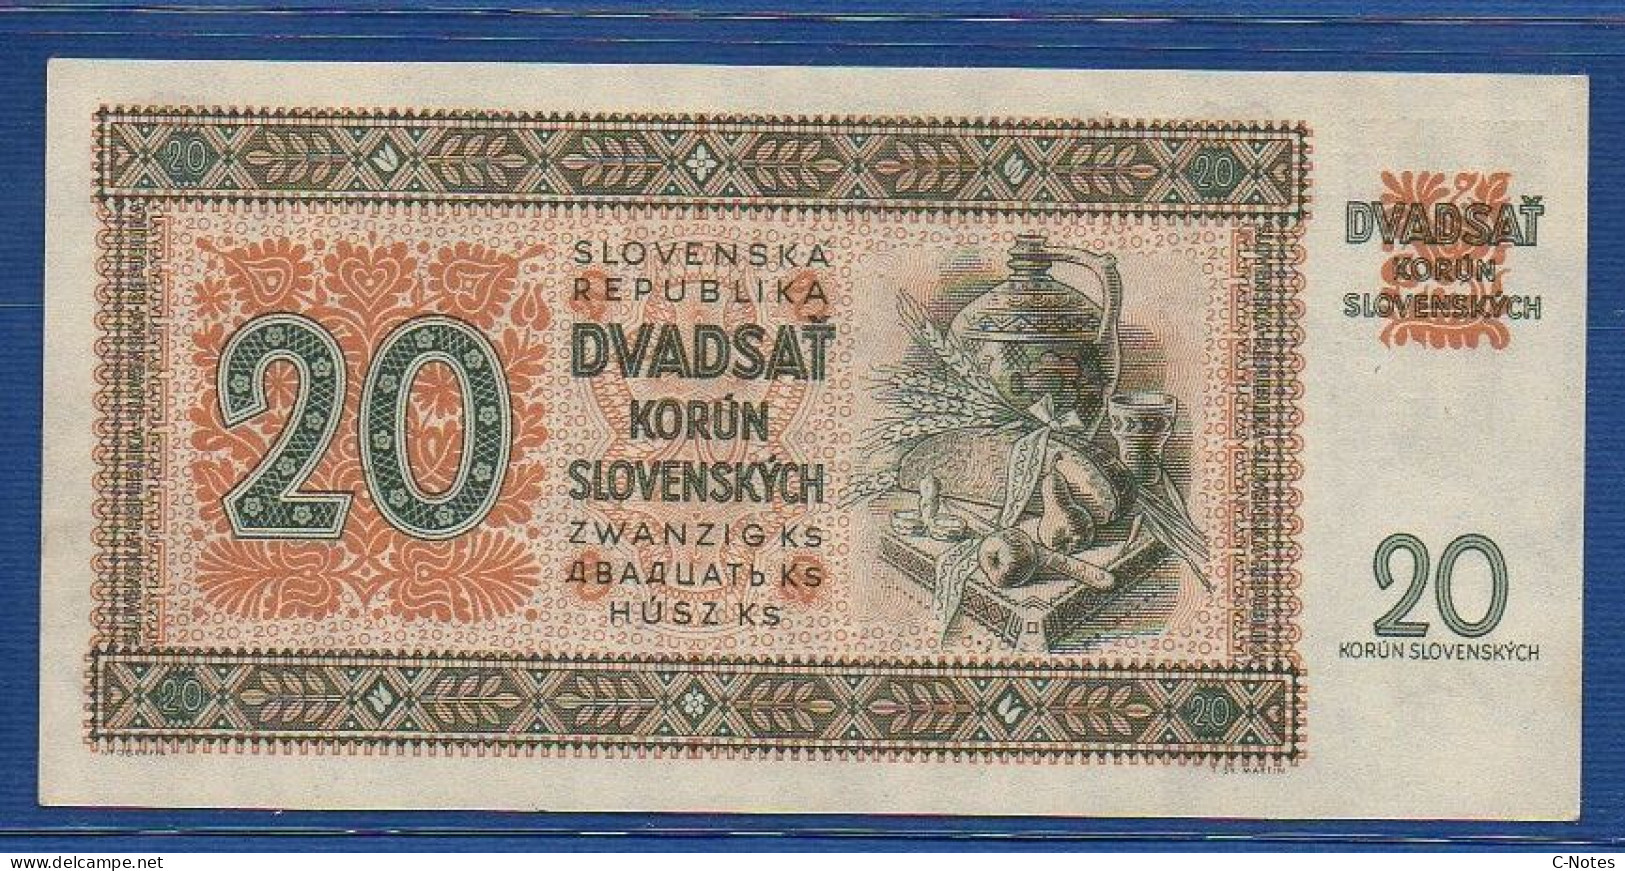 SLOVAKIA - P. 7a – 20 Korún Slovenských 1942 UNC- Serie Nz11 785452 - Slovakia